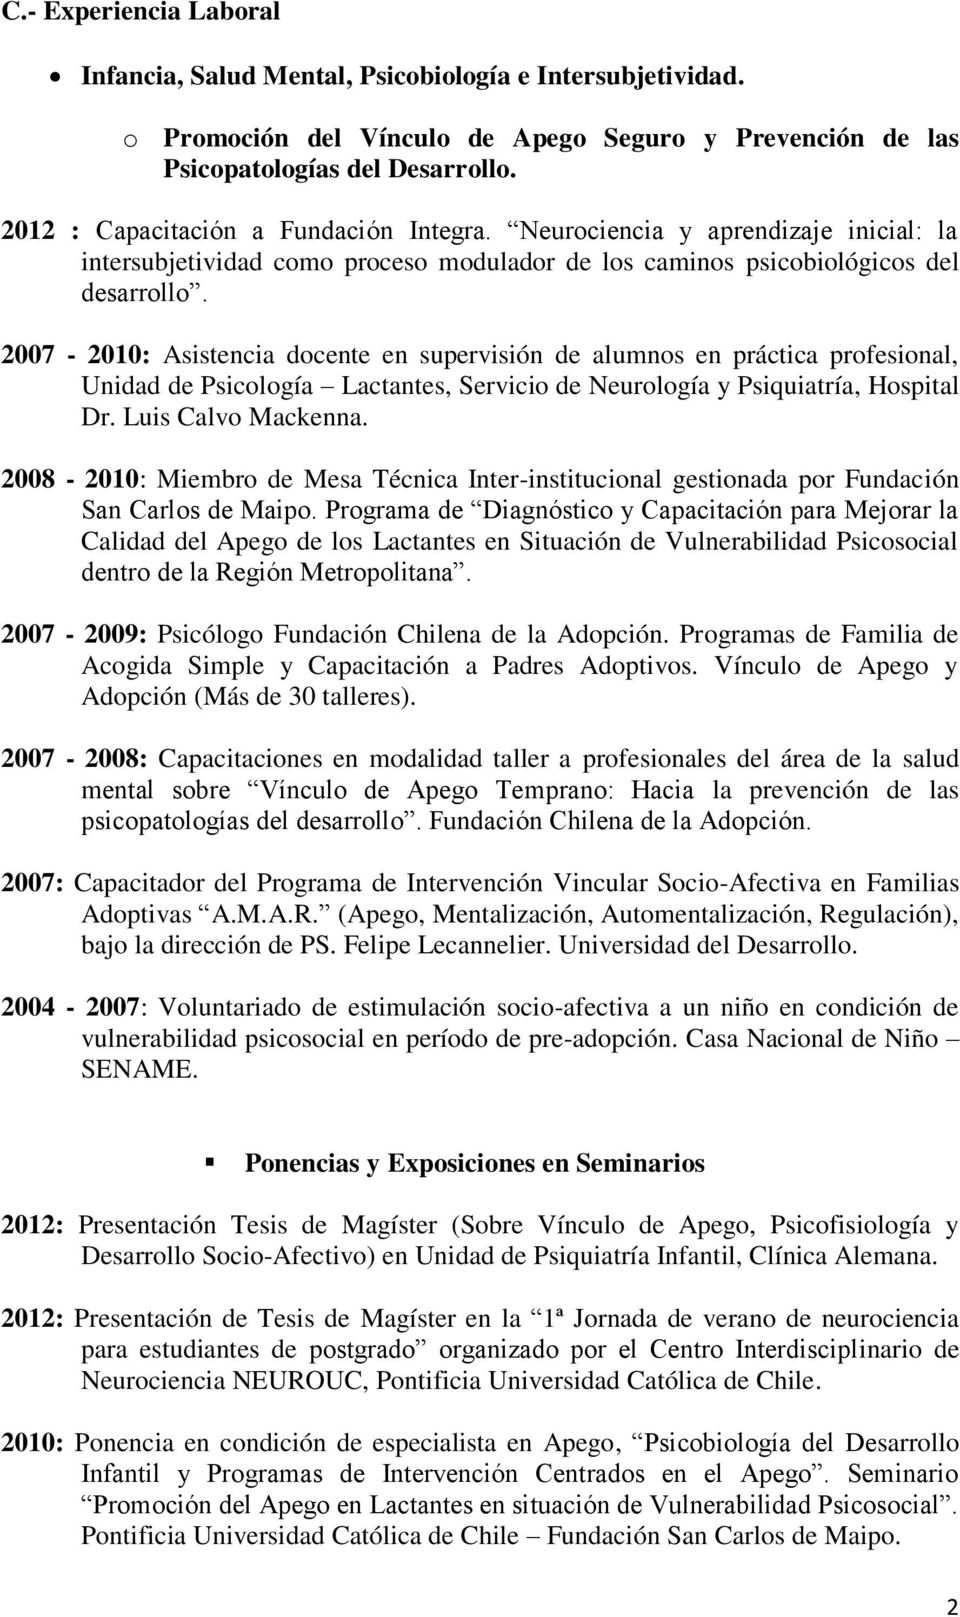 2007-2010: Asistencia docente en supervisión de alumnos en práctica profesional, Unidad de Psicología Lactantes, Servicio de Neurología y Psiquiatría, Hospital Dr. Luis Calvo Mackenna.